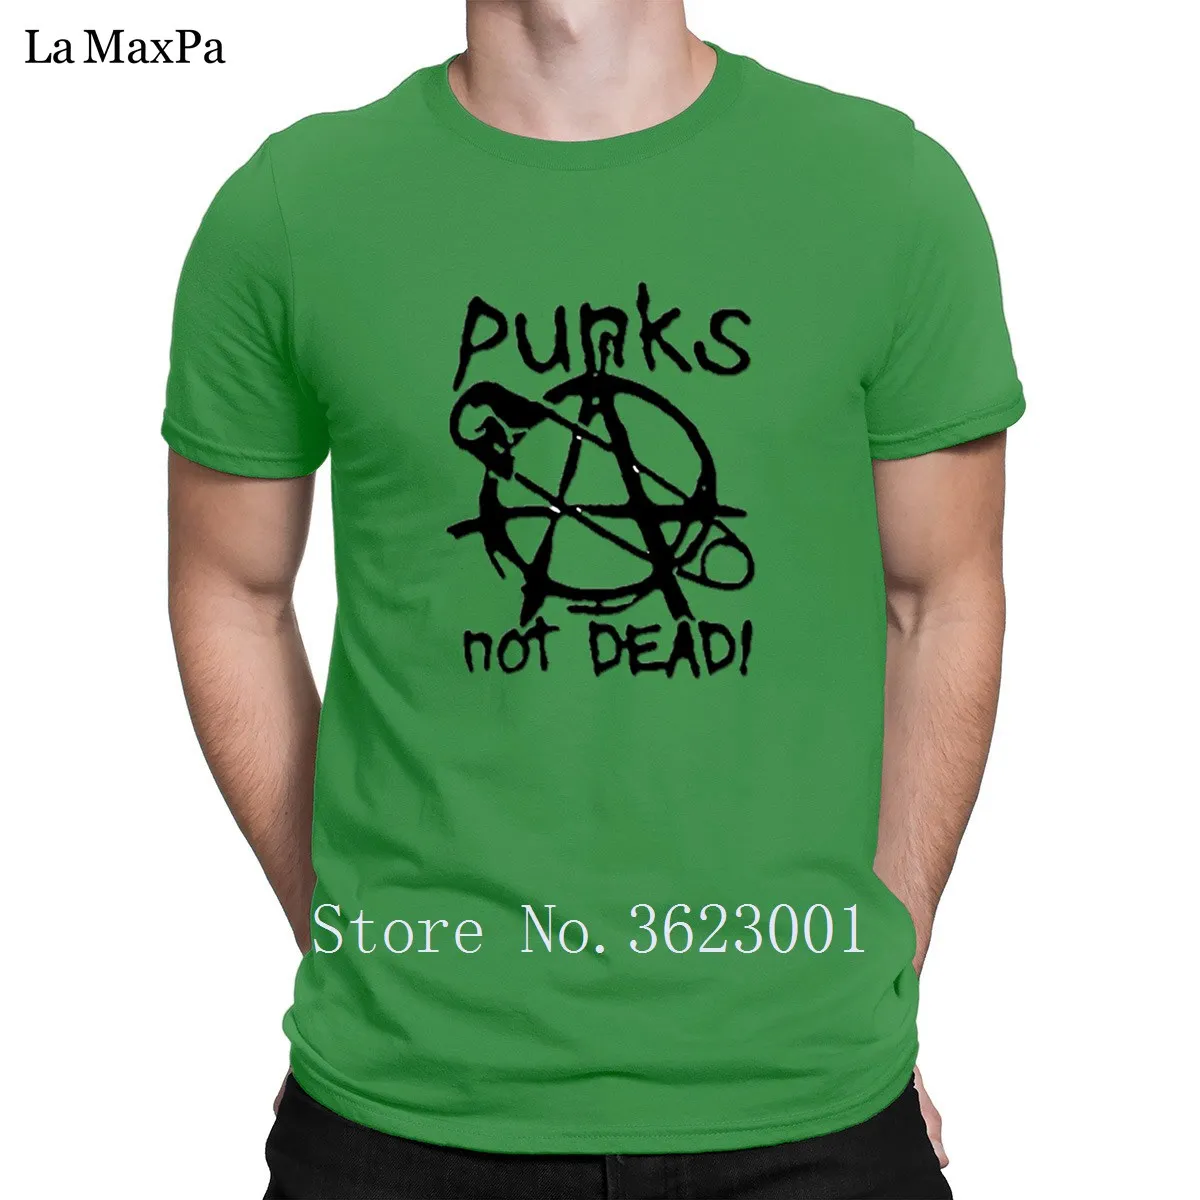 Новое поступление, креативная Мужская футболка с надписью Punks Not Dead, Мужская футболка унисекс, Мужская футболка с надписью, хлопок, высокое качество - Цвет: Green